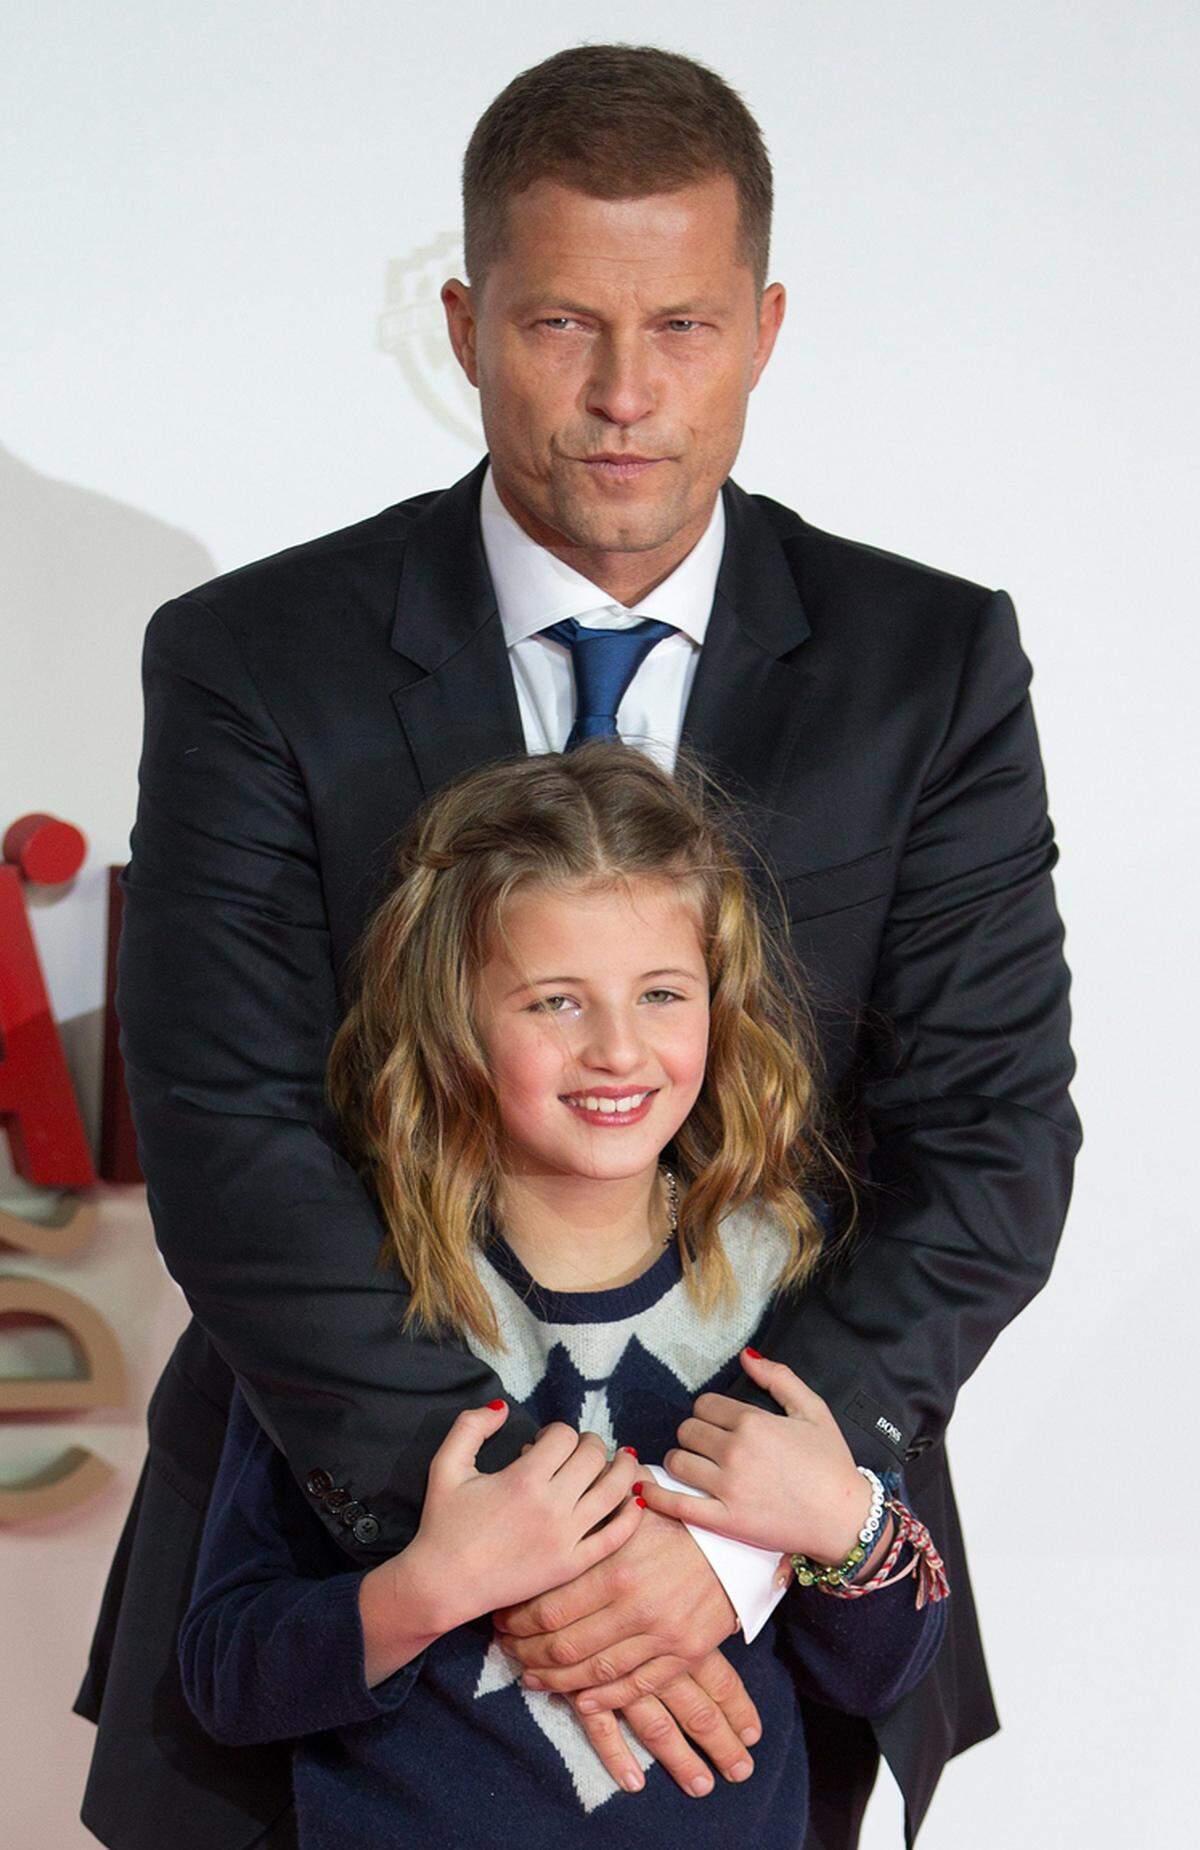 Ebenfalls unter die Schauspieler geht die zehnjährige Emma Schweiger, Tochter von Till Schweiger. Nach "Keinohrhasen", "Zweiohrküken" und "Kokowääh 1 +2" ist sie schon fast ein alter Hase im Filmgeschäft.